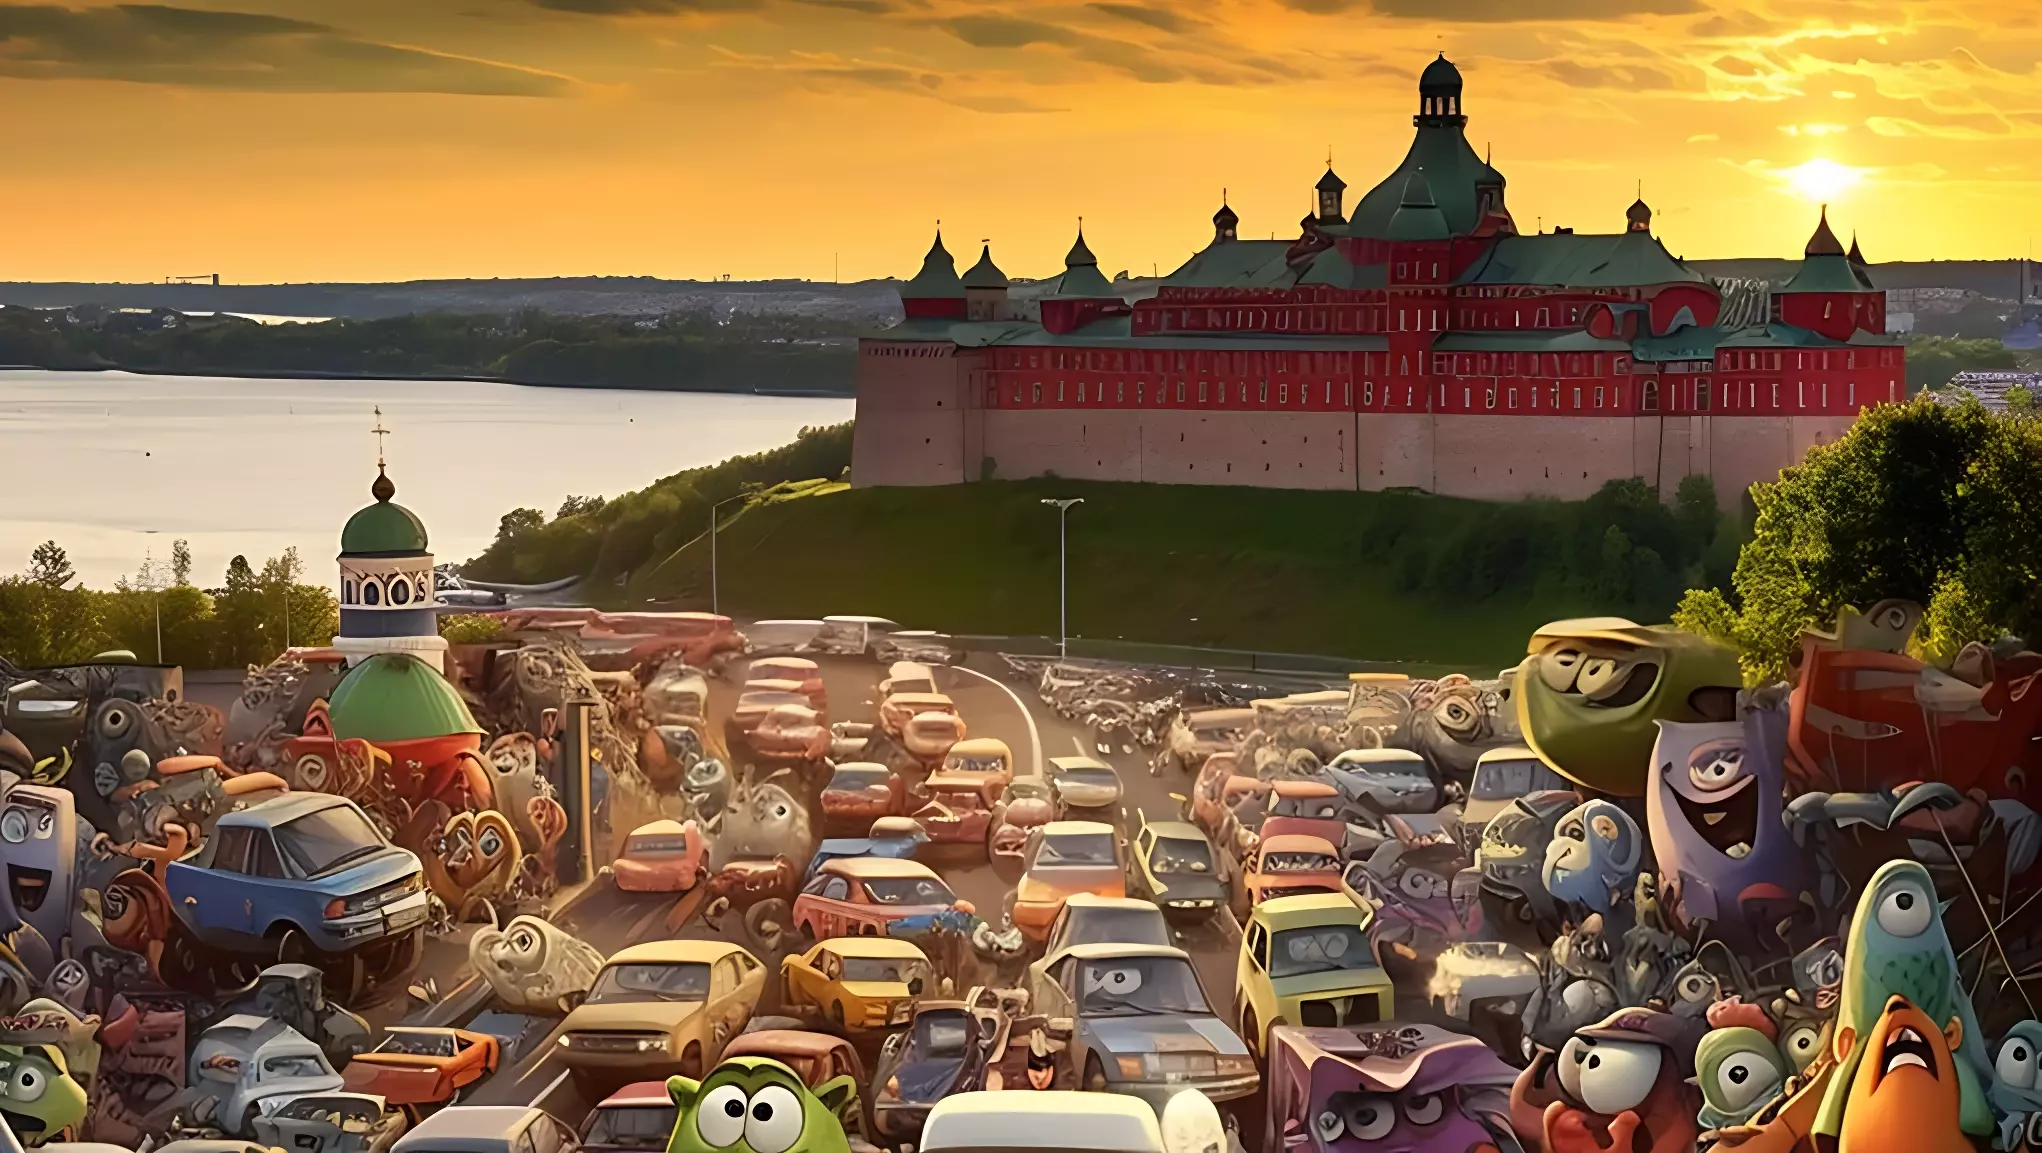 Нижний Новгород в мультфильмах Pixar